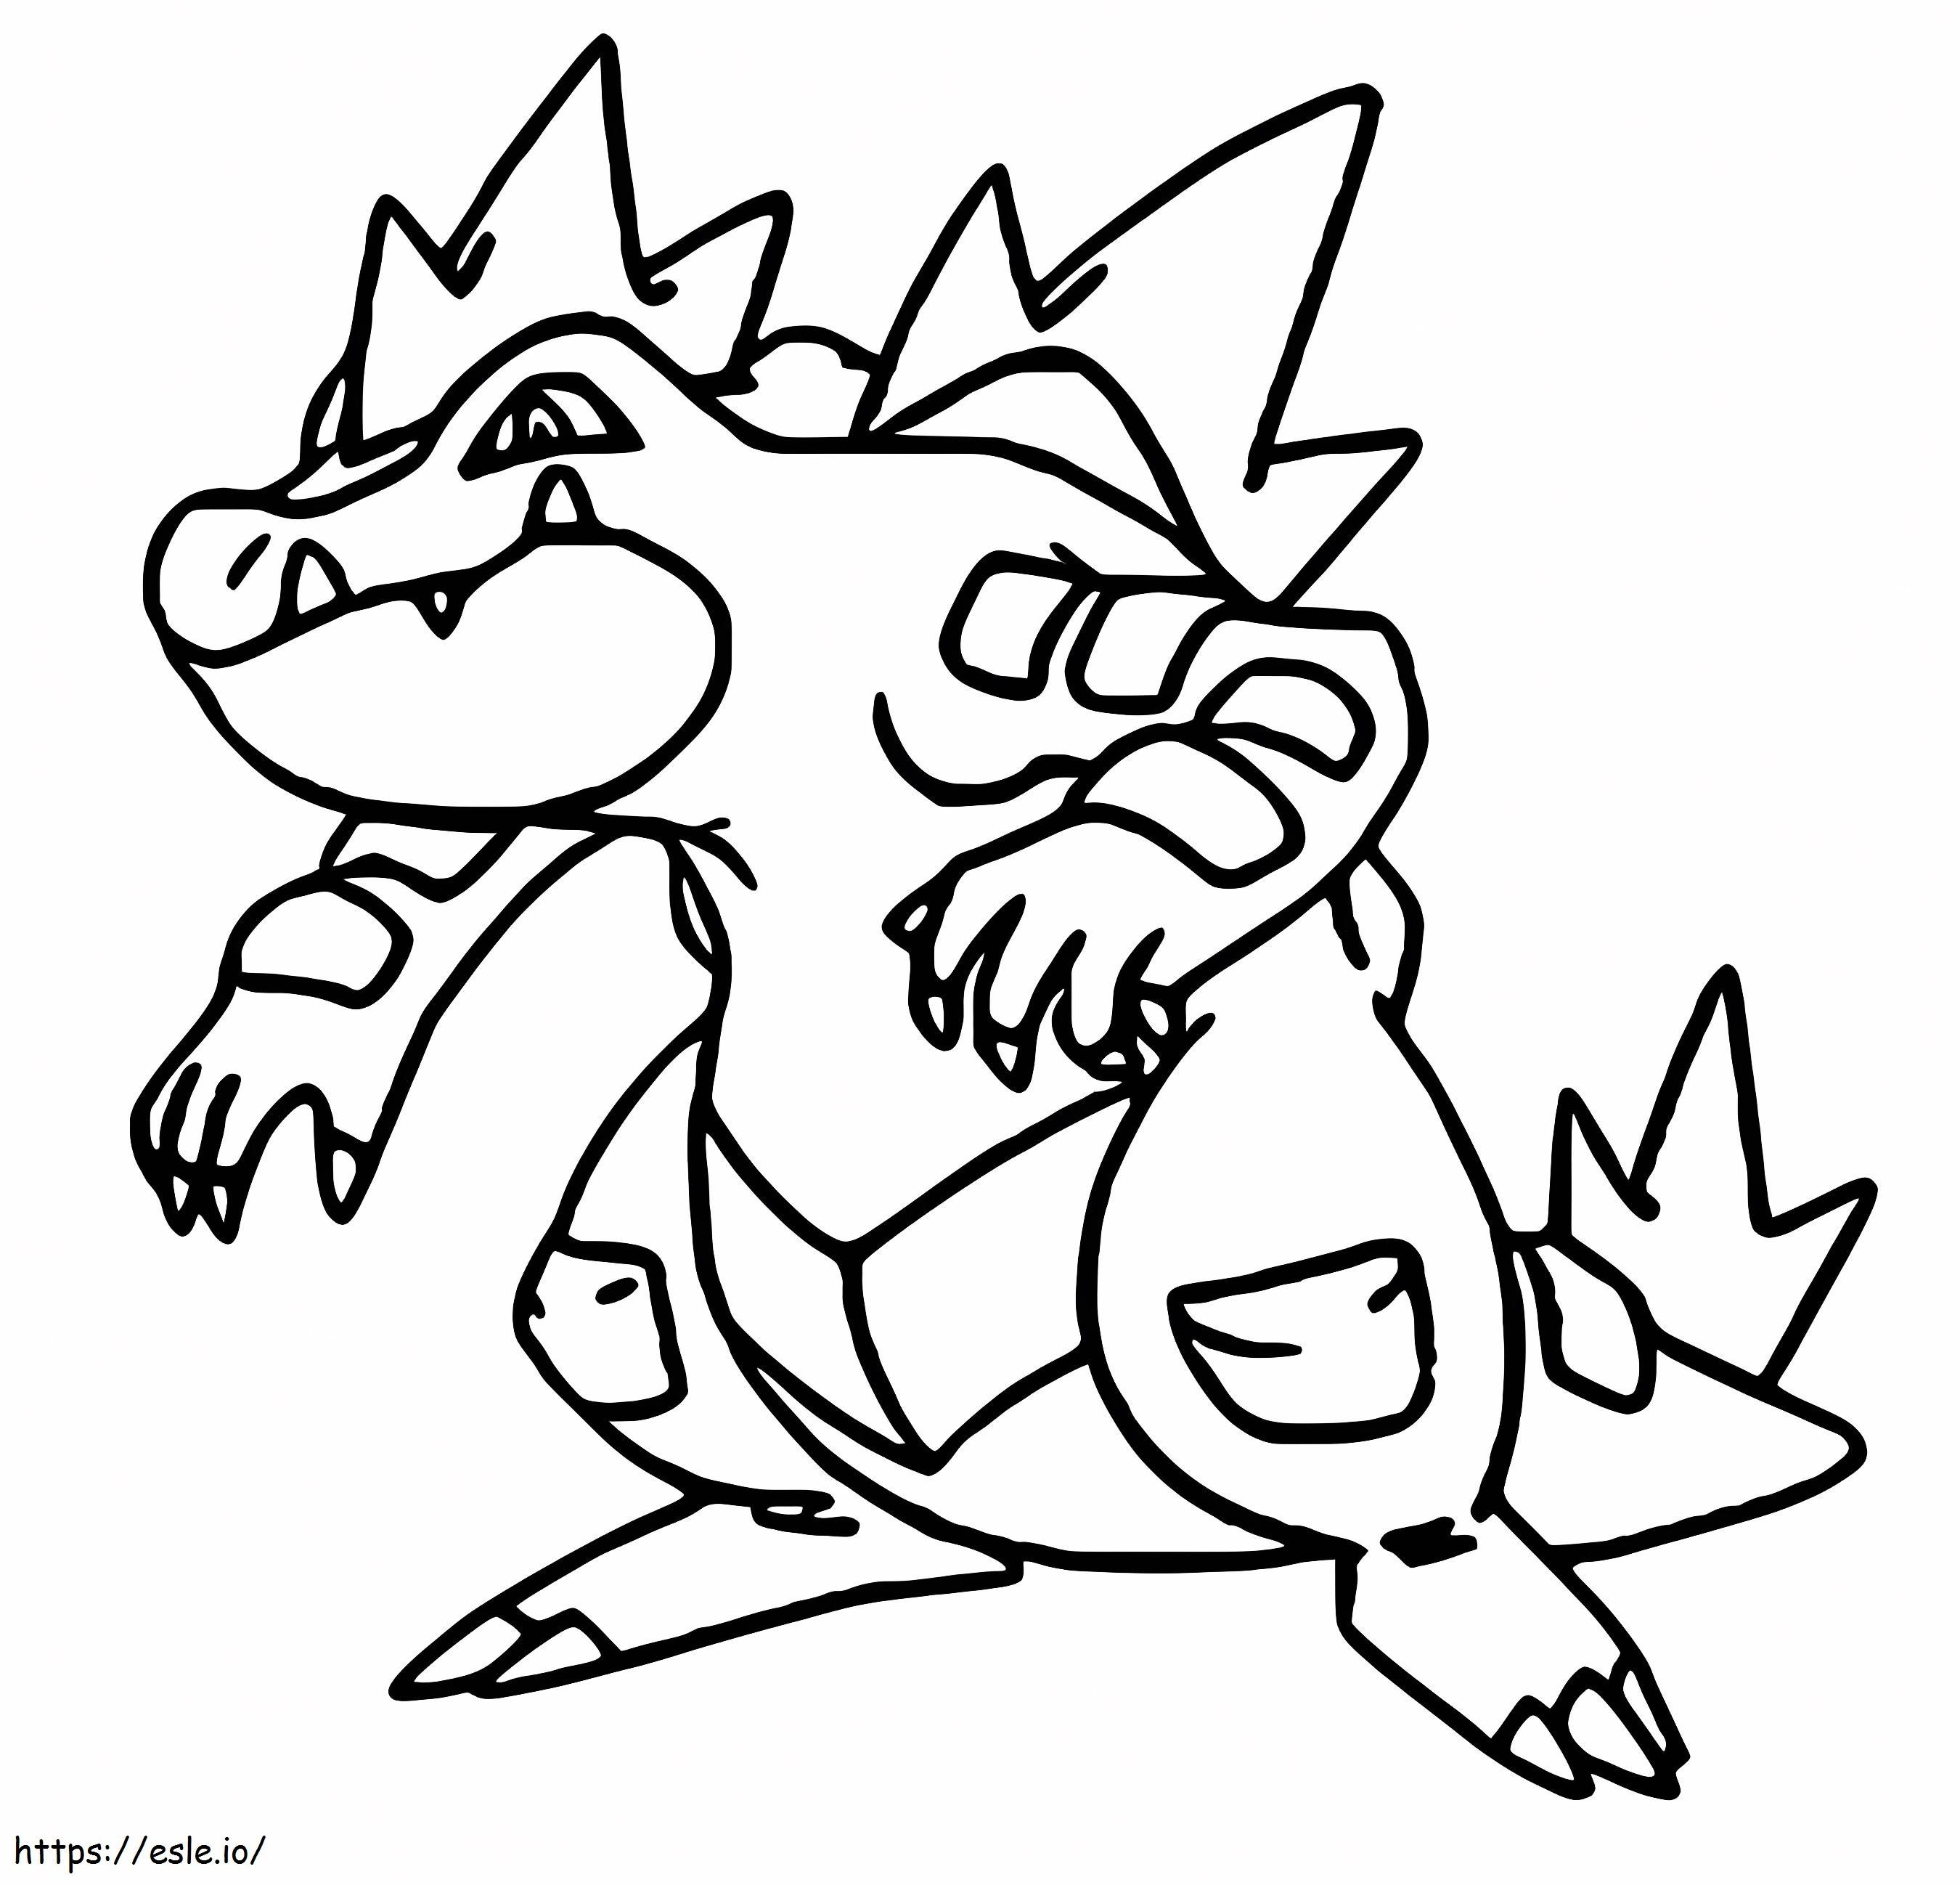 Coloriage Pokémon Feraligatr Gen 2 à imprimer dessin